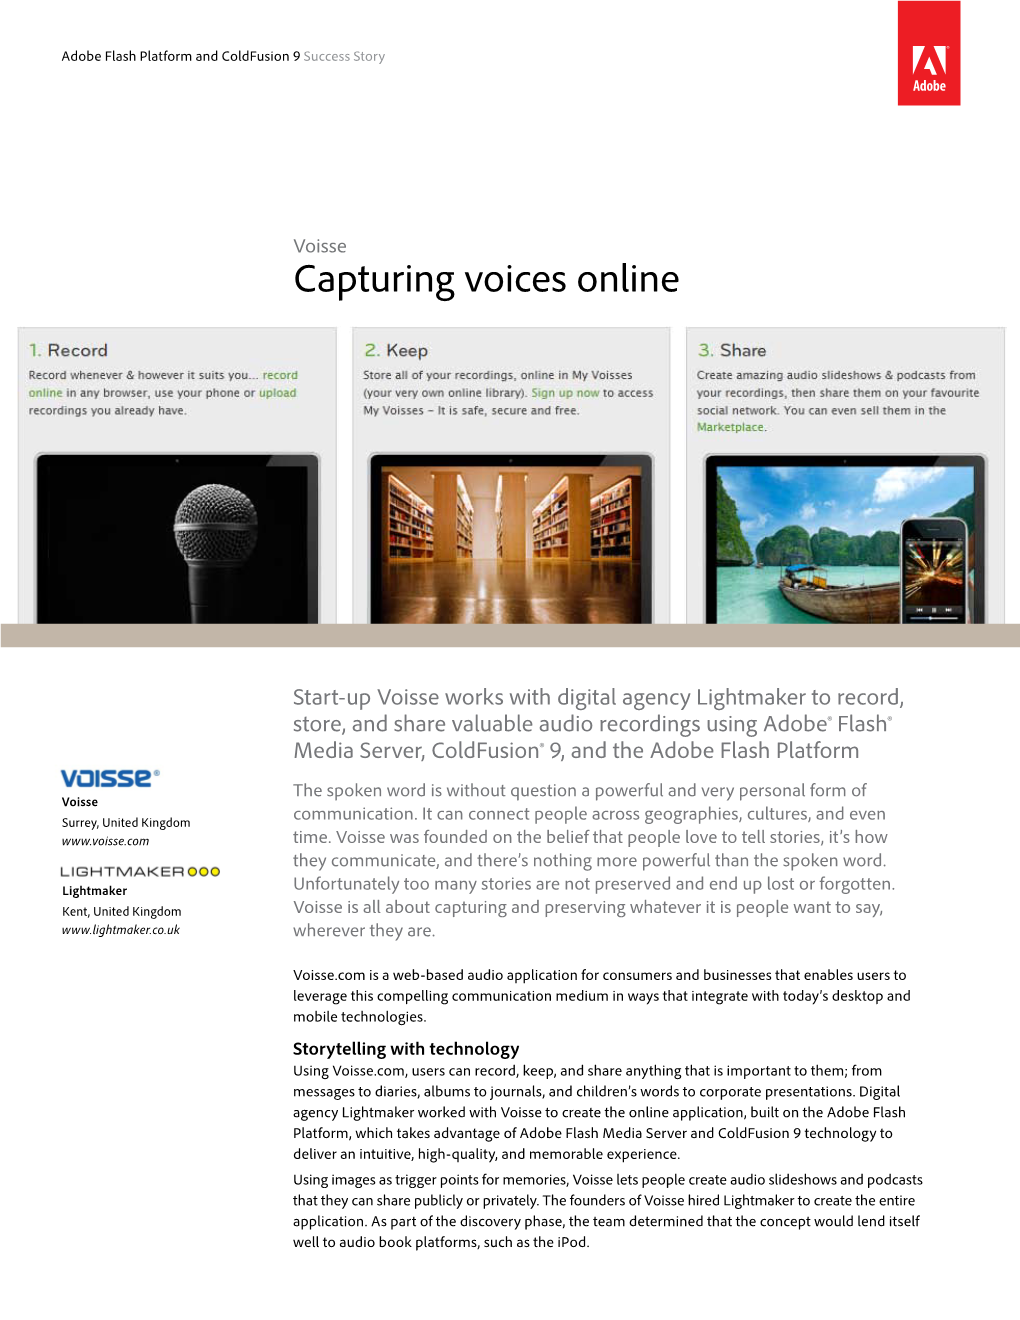 Capturing Voices Online